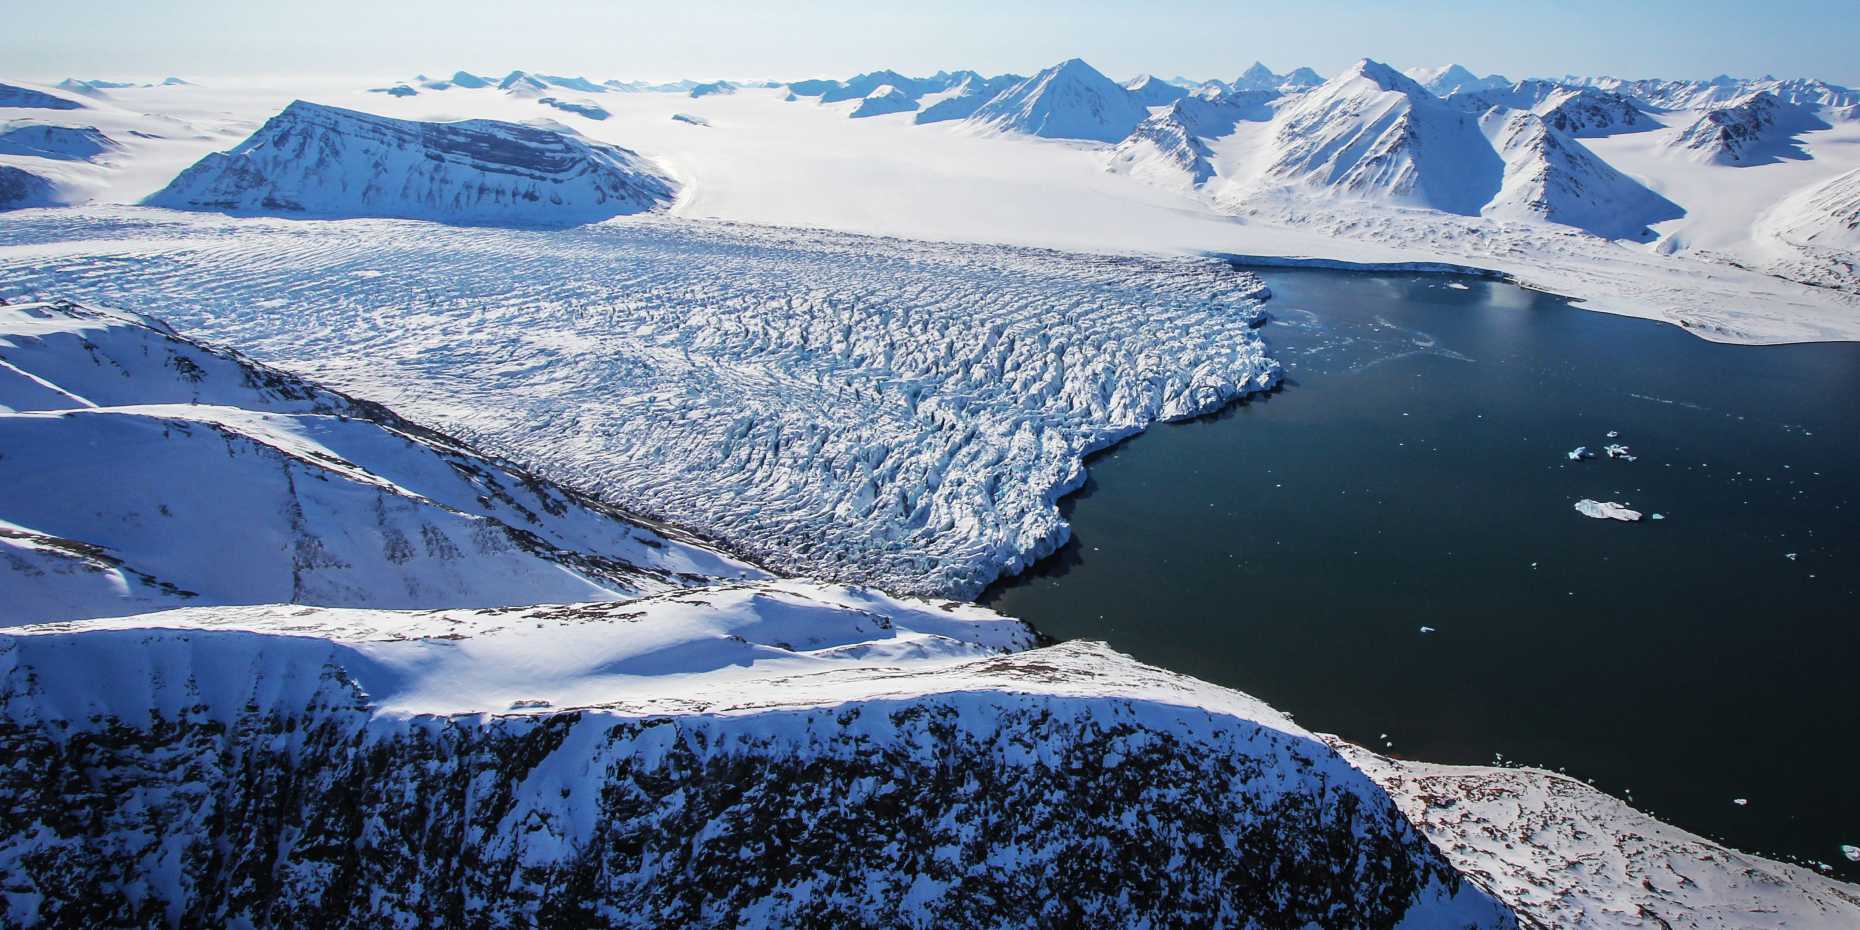 Vergr?sserte Ansicht: Arktische Inseln wie Baffin Island oder Spitzbergen (hier im Bild) weisen die grössten Eisvolumen ausserhalb der Eisschilde Grönlands und der Antarktis auf. (Bild: Katrin Lindbaeck)